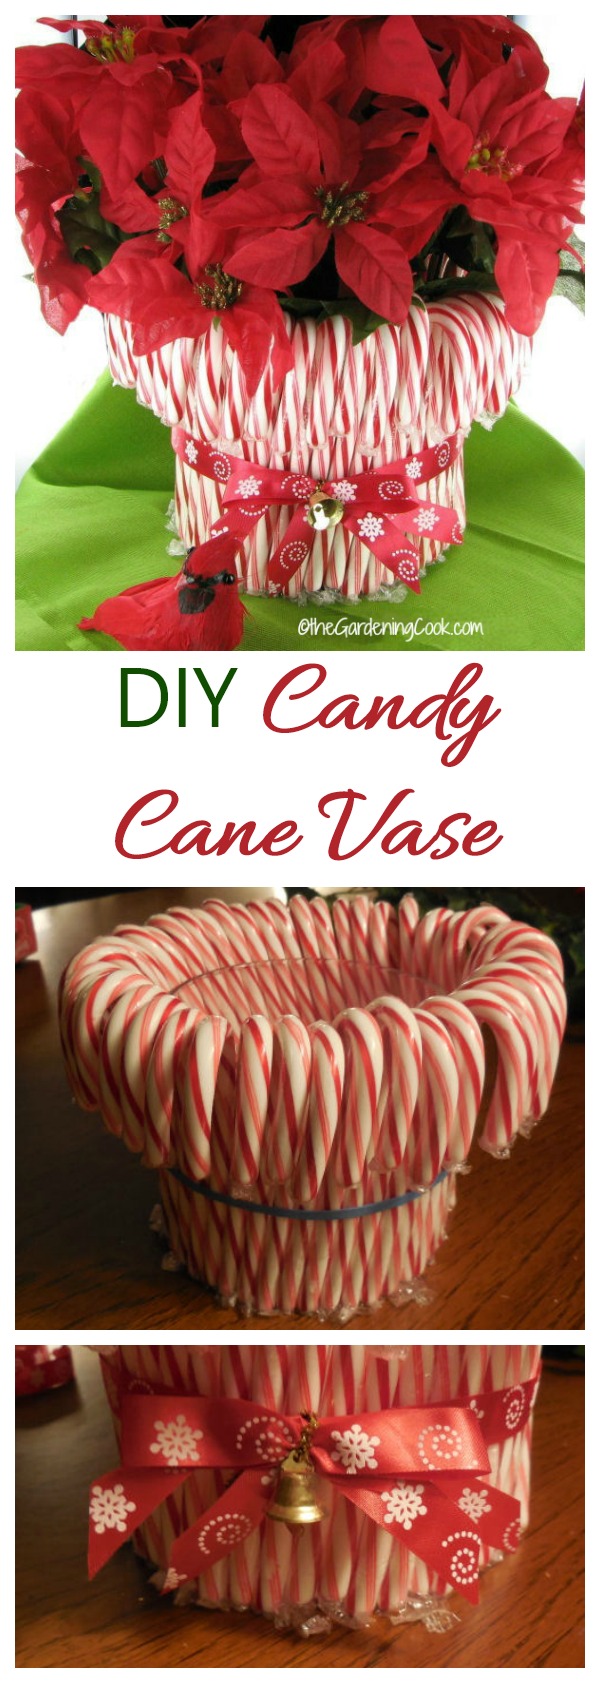 წვრილმანი Candy Cane Vase - Easy Holiday Decor Project